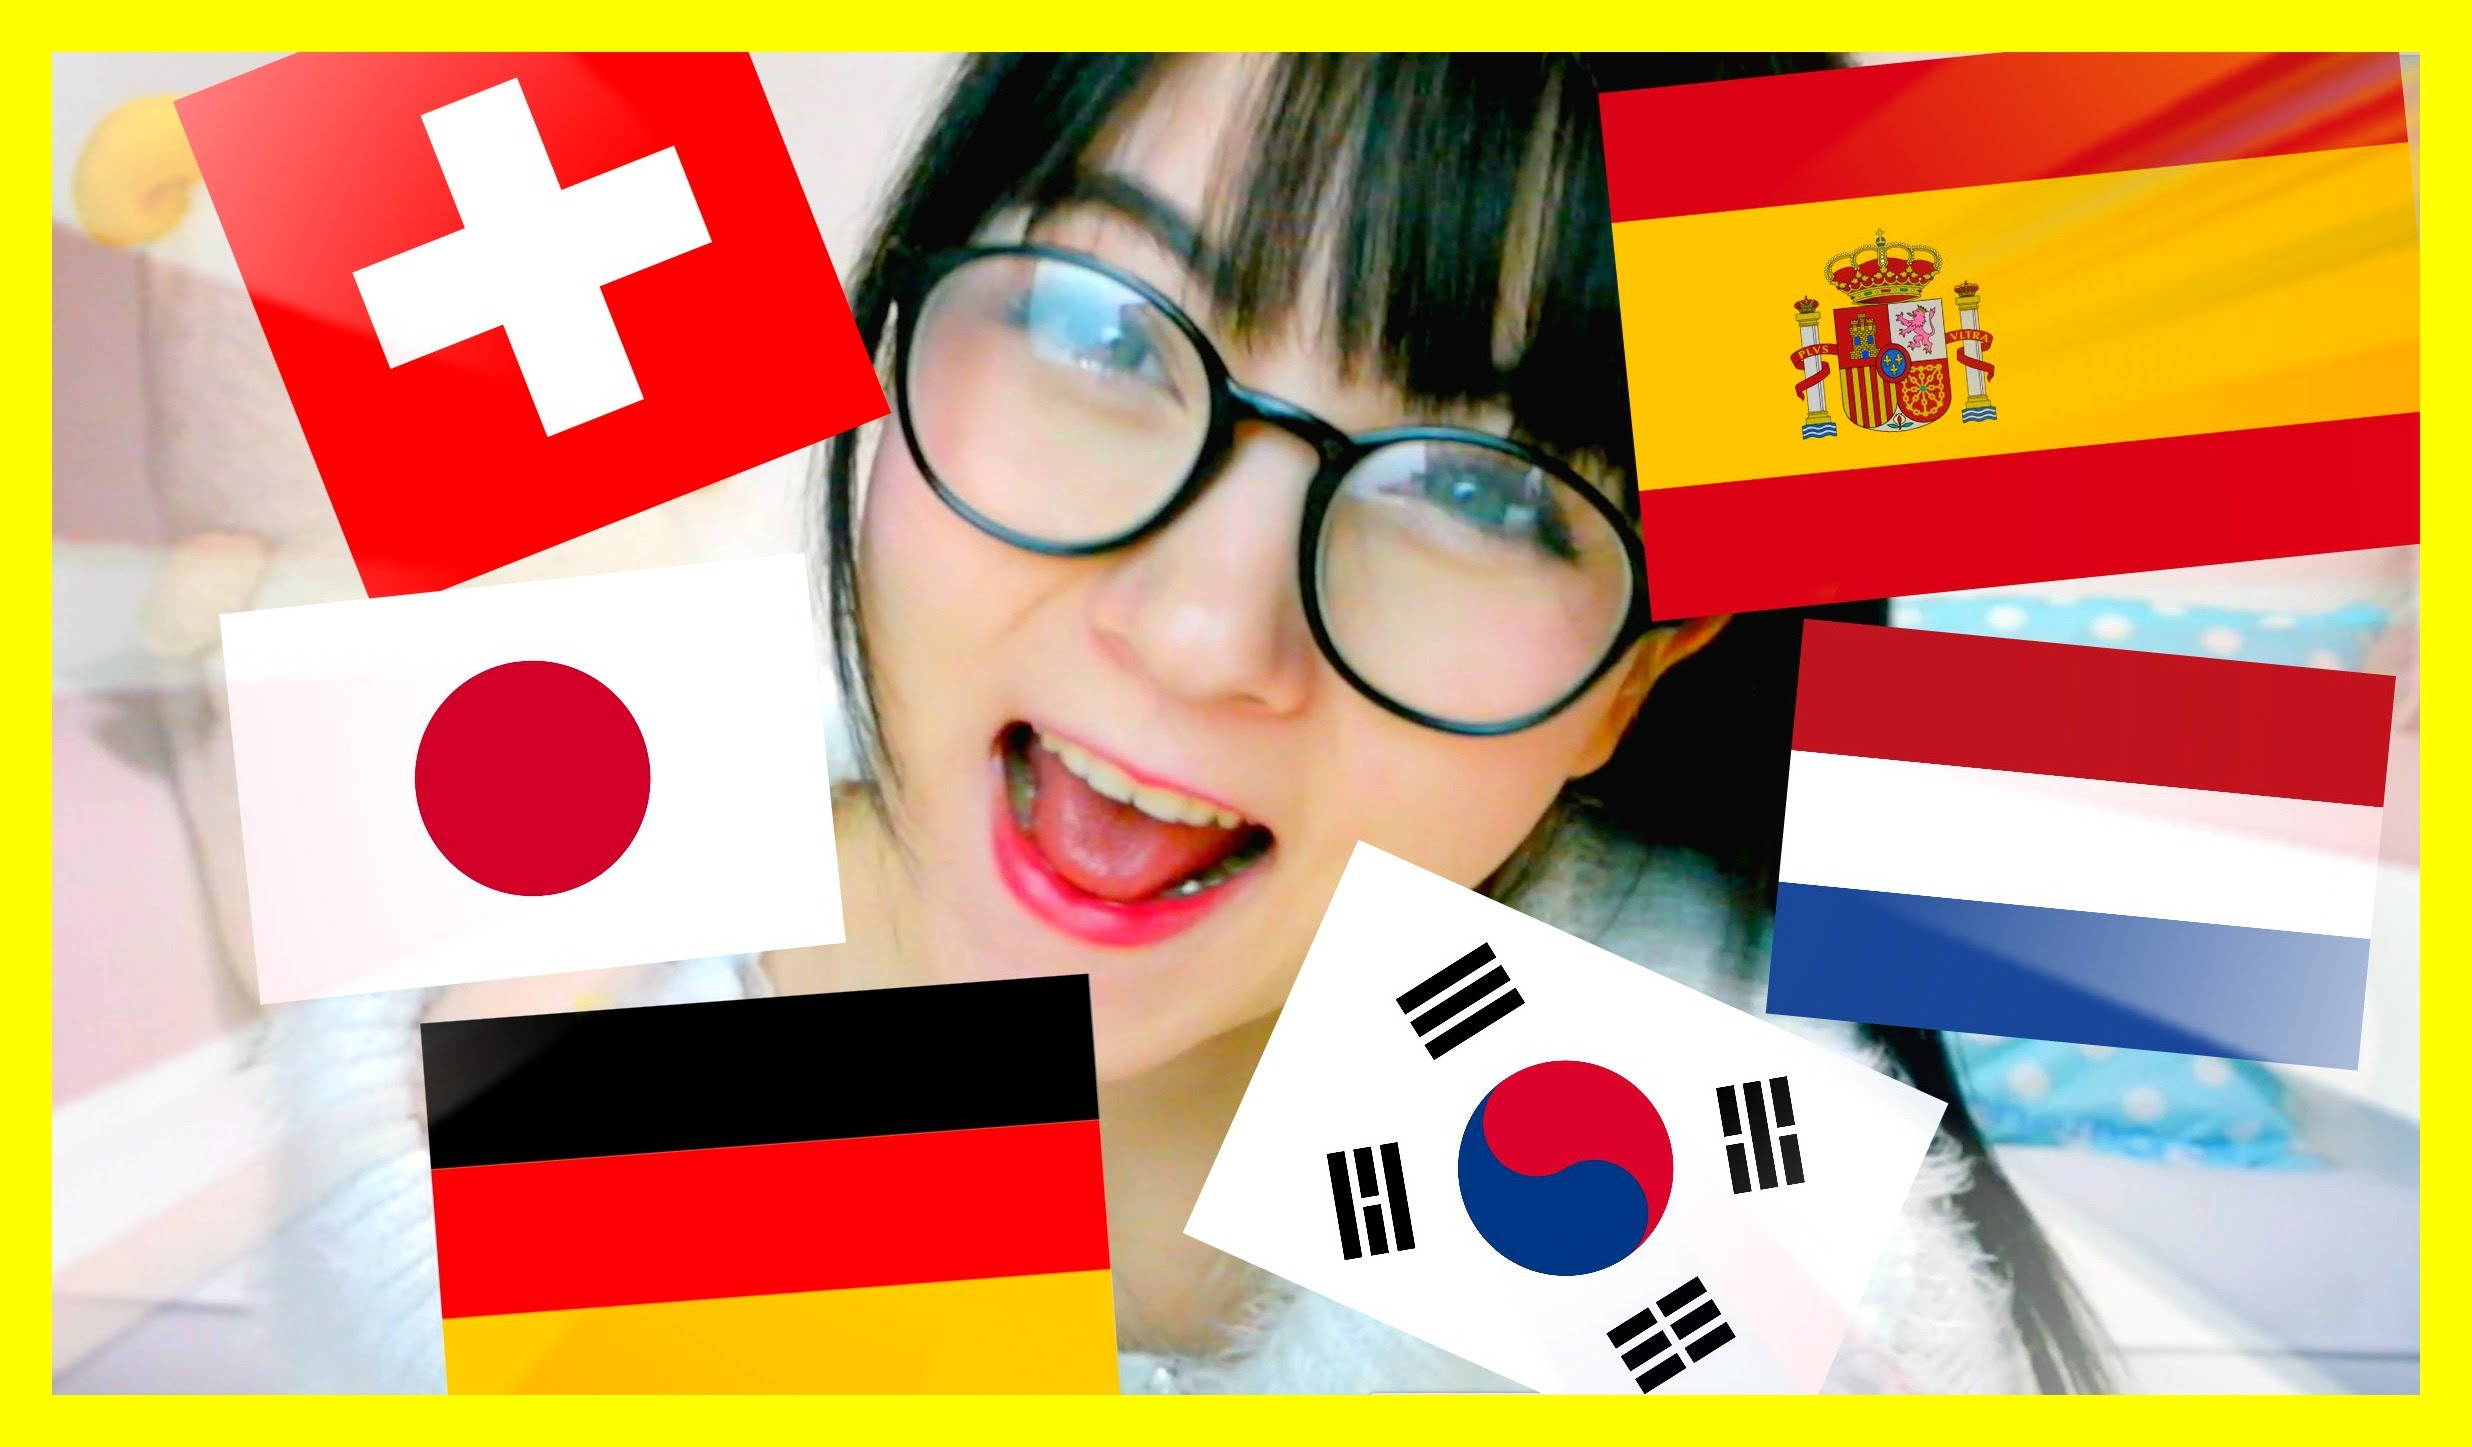 TALKING IN 7 LANGUAGES! German, Japanese, Spanish, Korean, Dutch & Swiss German